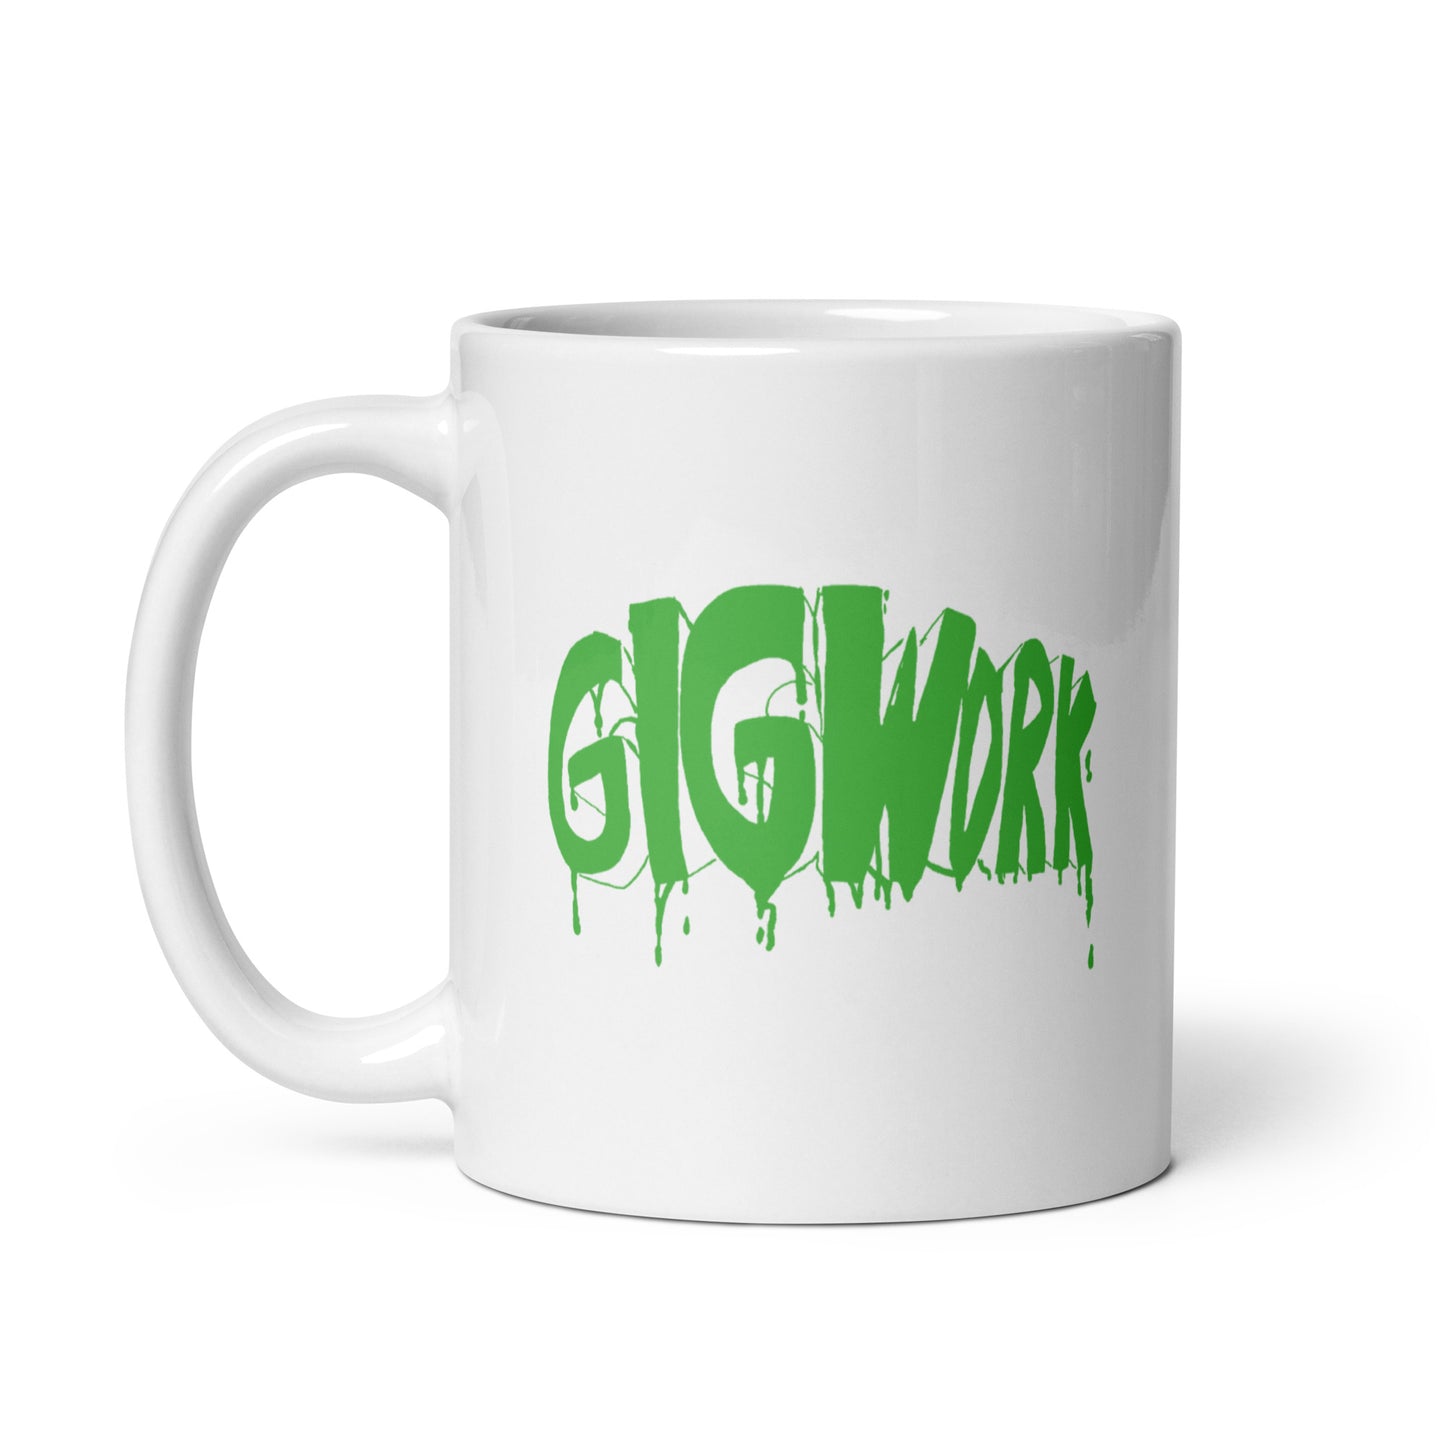 Gig Work white glossy mug